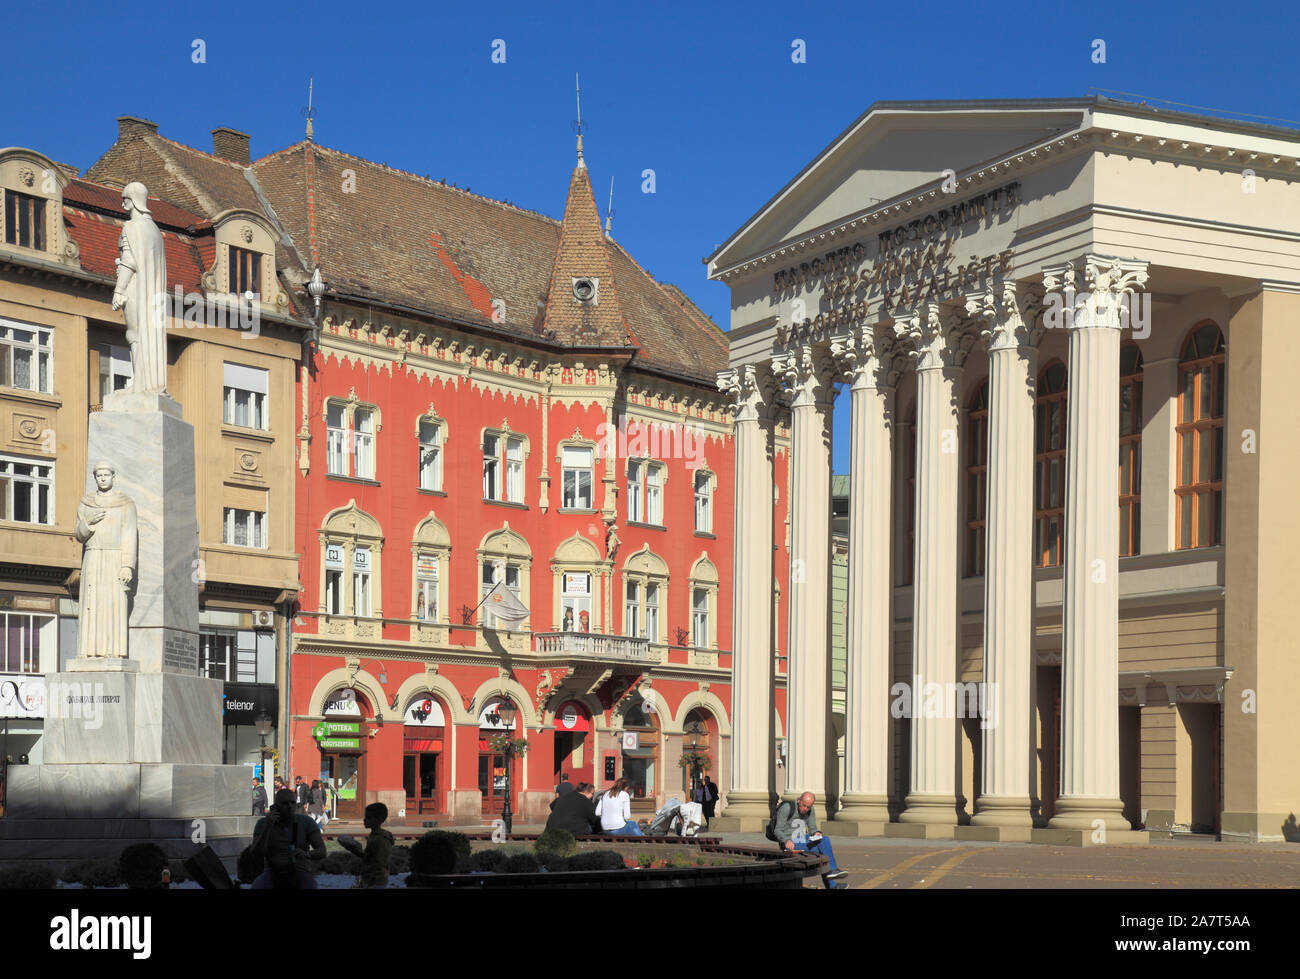 La Serbie, la Voïvodine, Subotica, la place de la liberté, Location de Jovan Nenad statue, Théâtre National, Banque D'Images